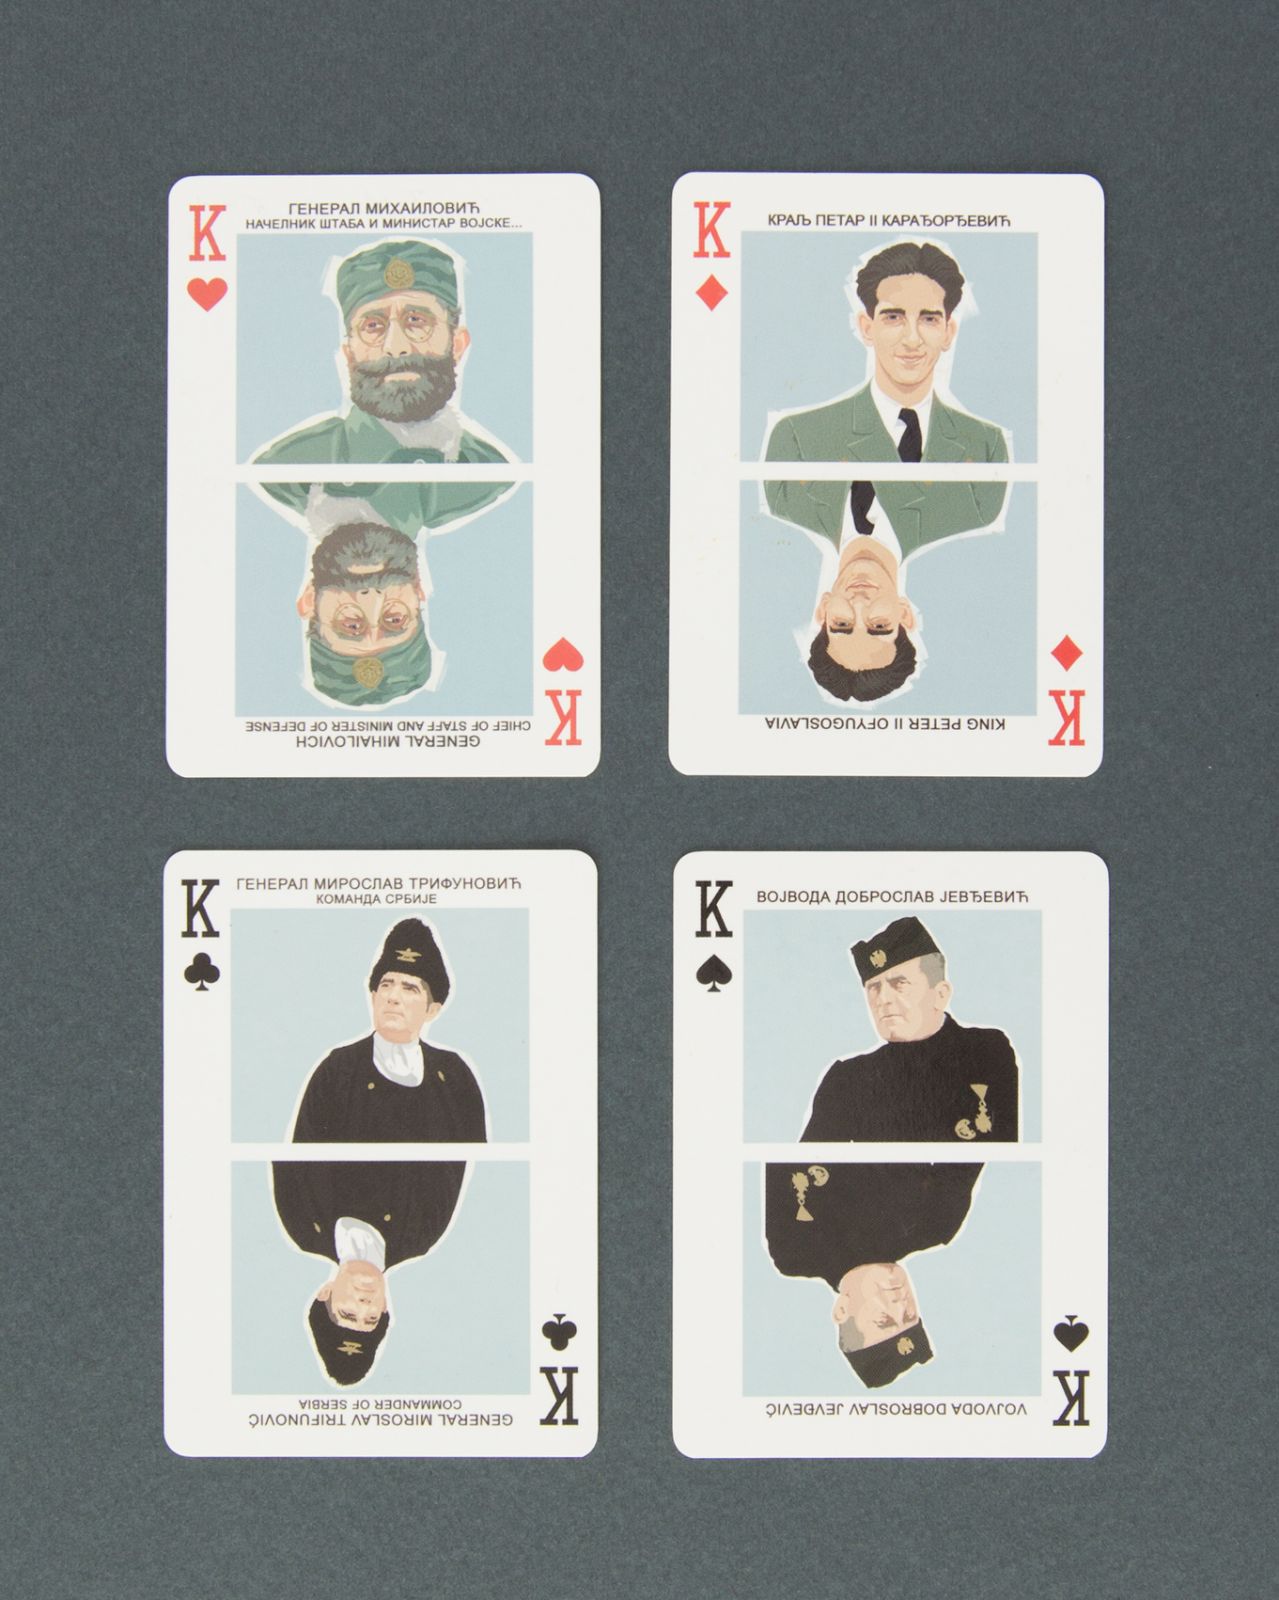 Kraljevina Jugoslavija u Drugom svetskom ratu - karte za igranje